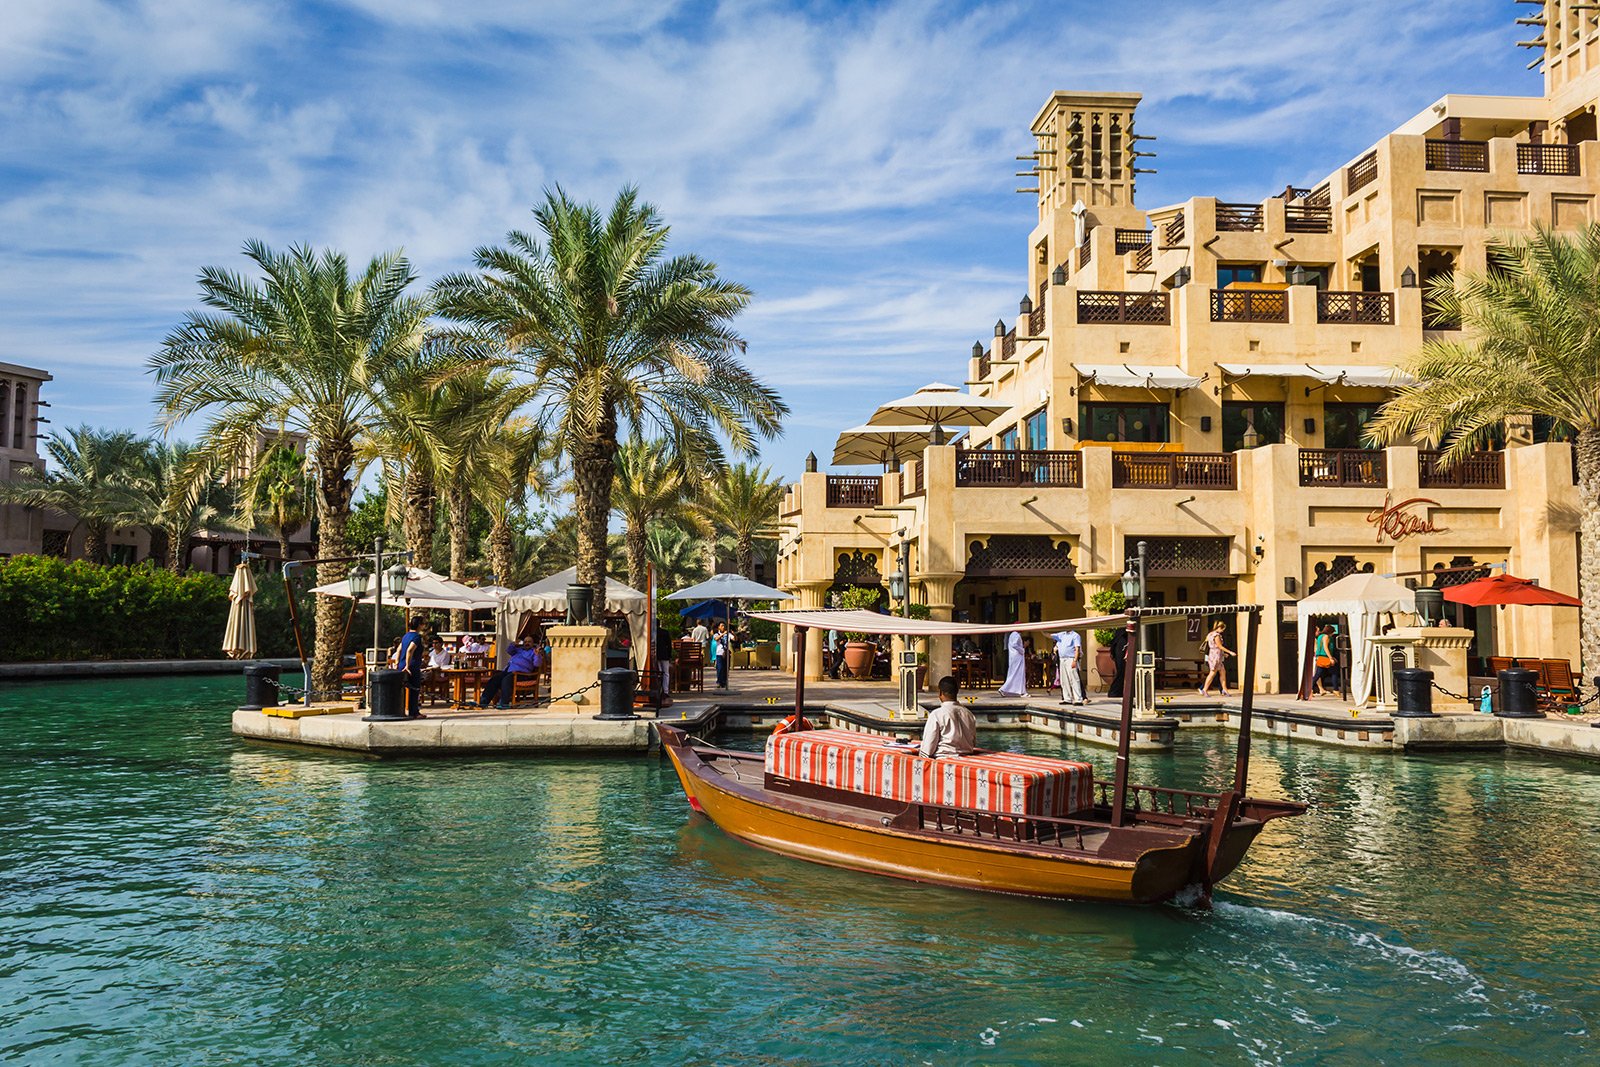 How to take the abra boat in Dubai Venice in Dubai